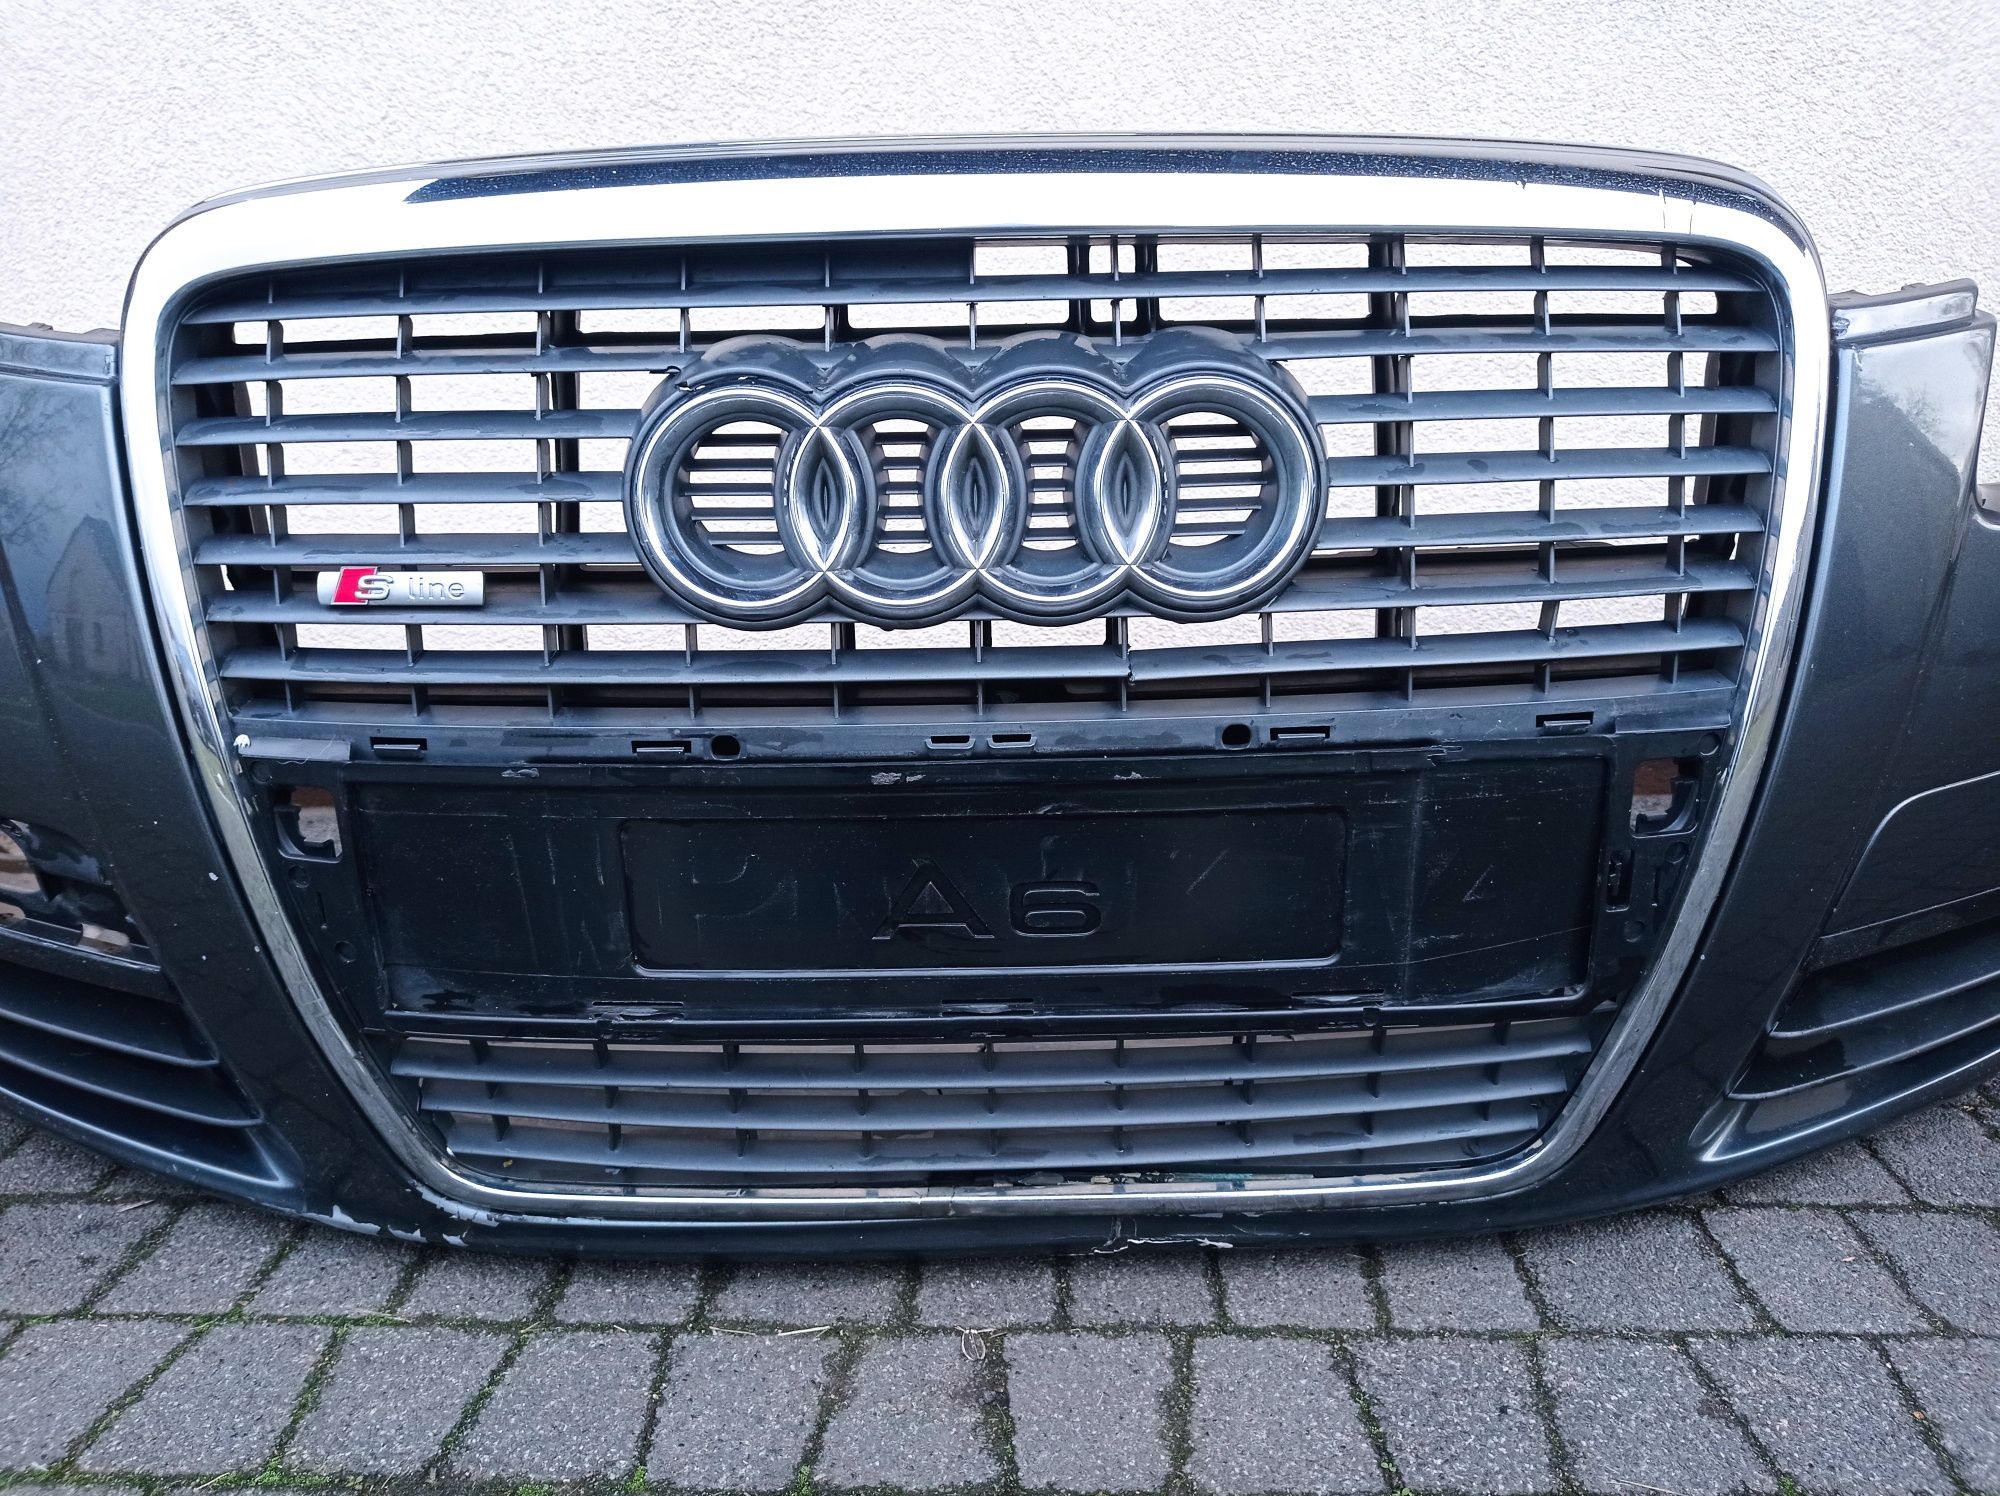 Zderzak przód Audi A6 C6 LZ7S, brak grila